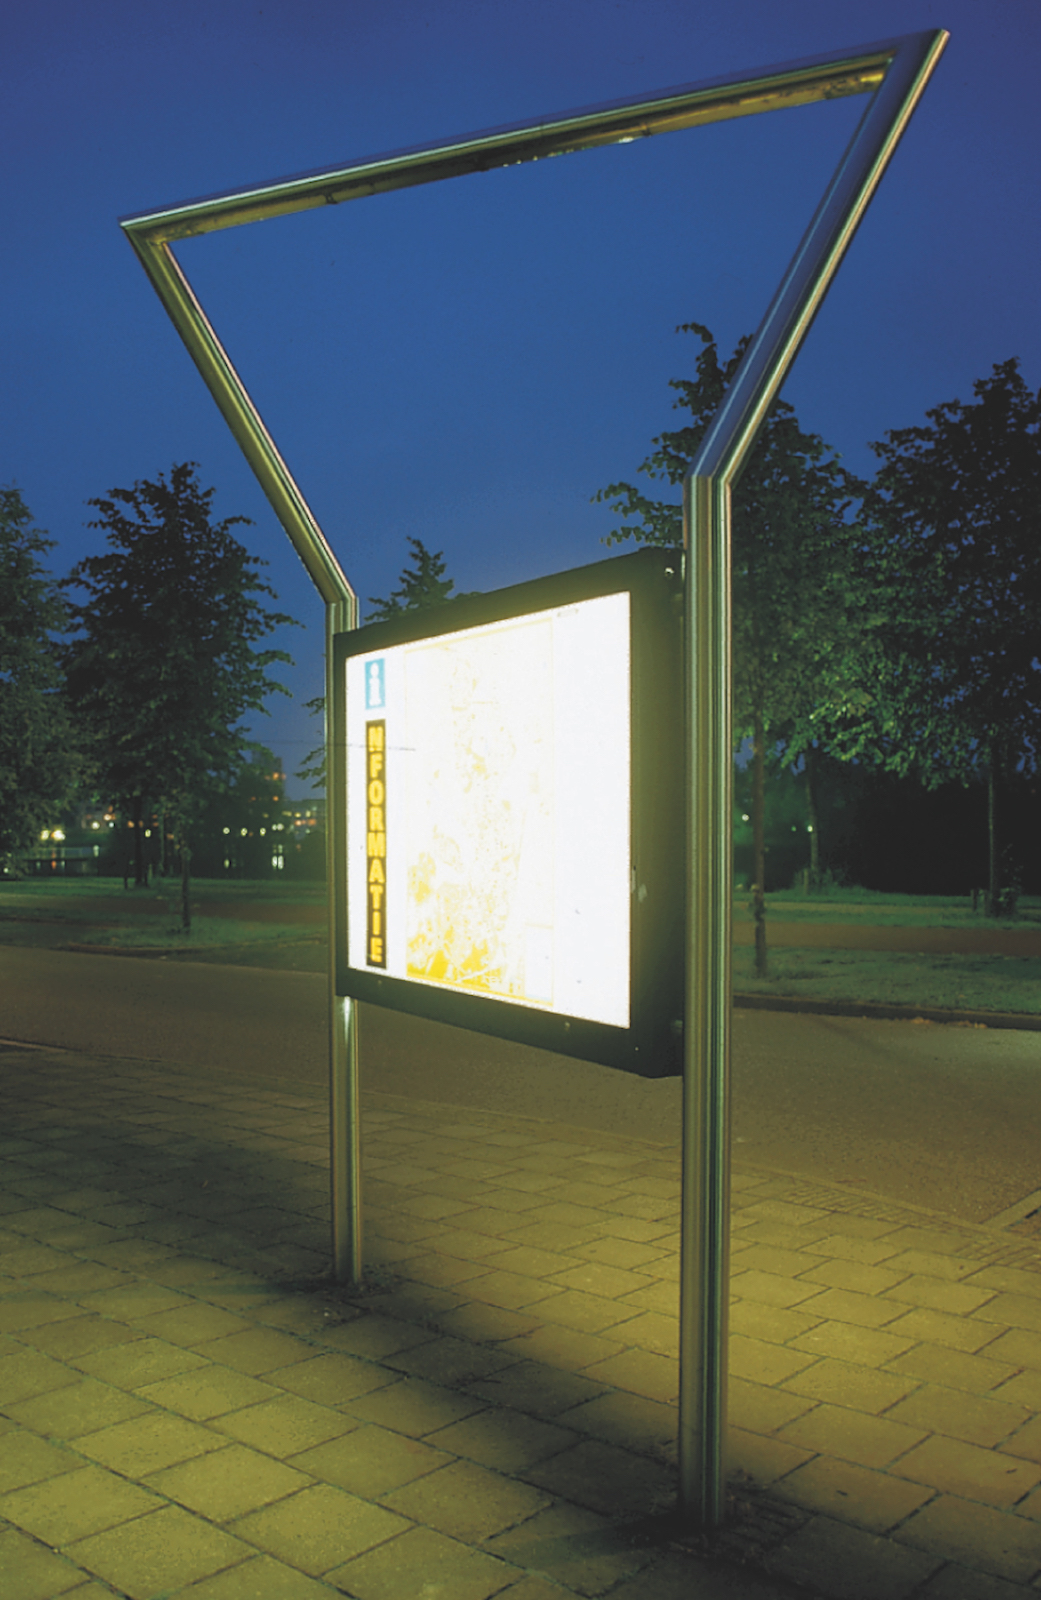 Information board, Kattenbroek